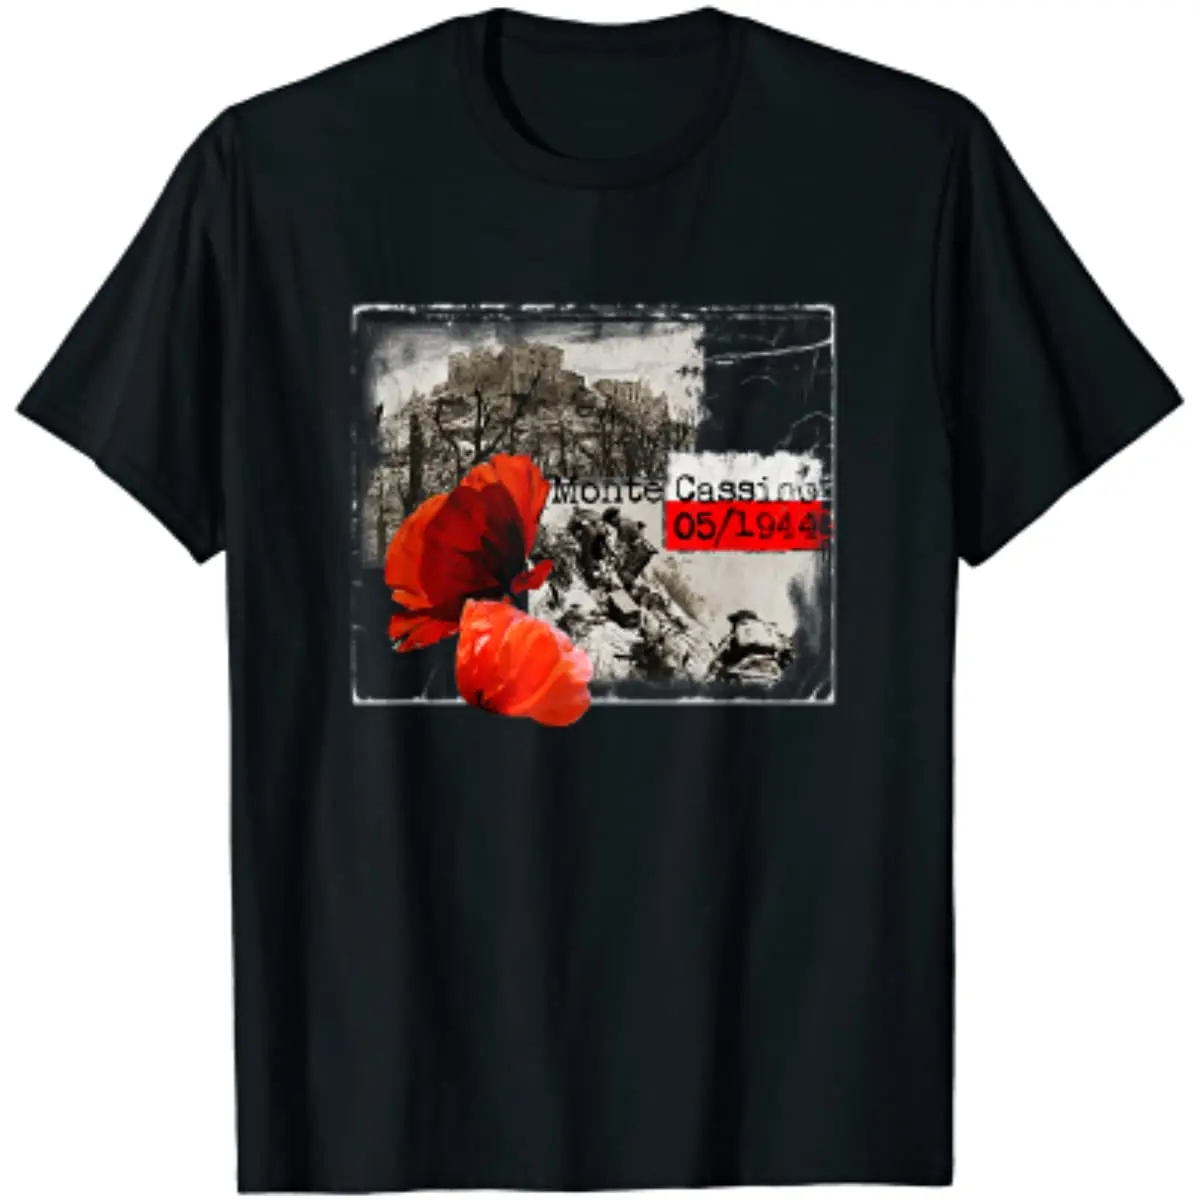 

Мужская футболка Monte кассино WW2 Czerwone Maki, польская, Повседневная футболка с коротким рукавом и круглым вырезом из 100% хлопка